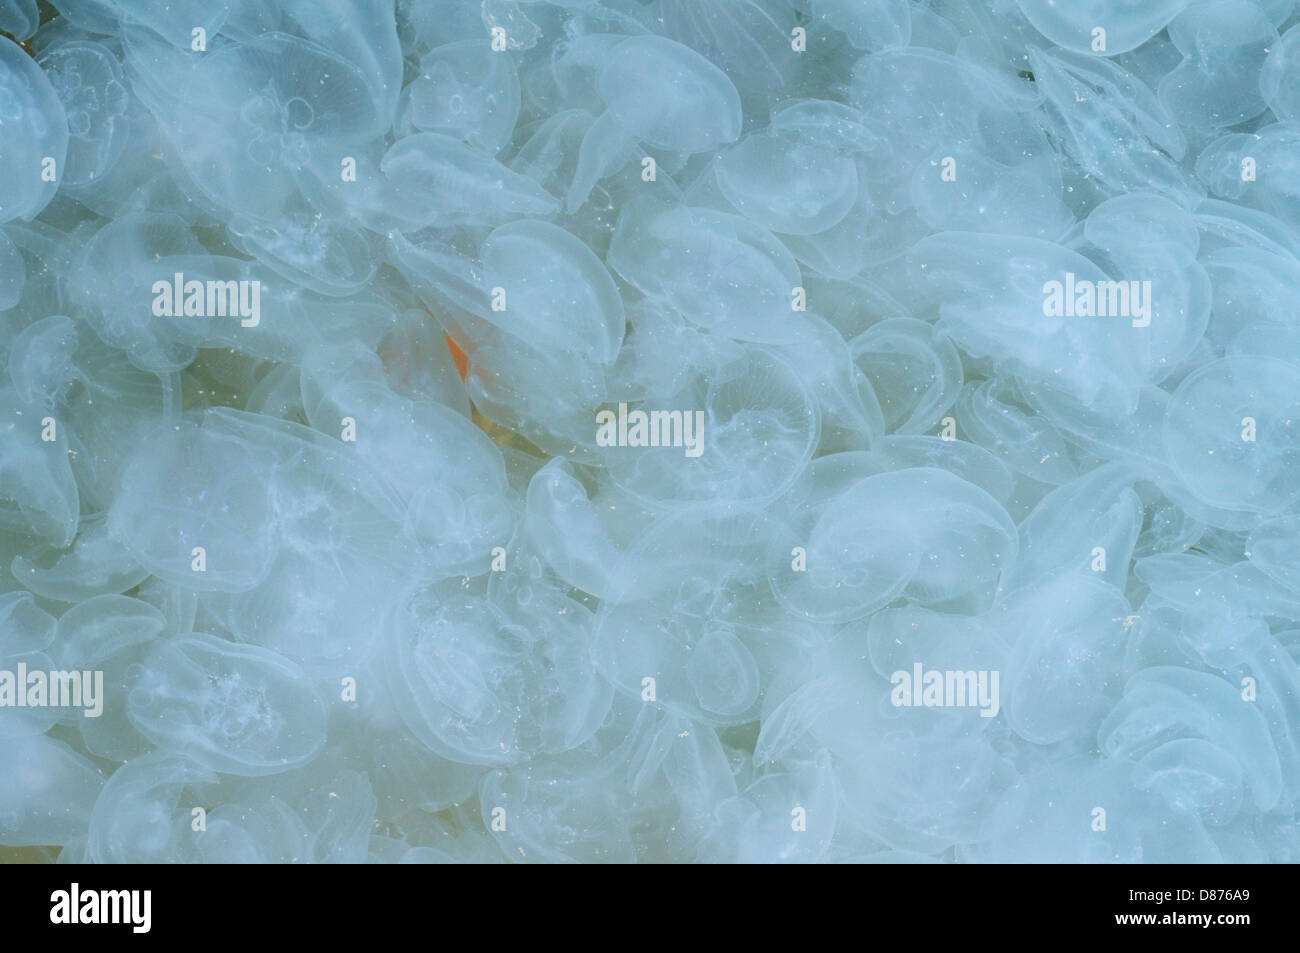 Large accumulation of jellyfish Aurelia (Aurelia aurita) in shallow water, Black sea, Yalta, Crimea, Ukraine, Eastern Europe Stock Photo